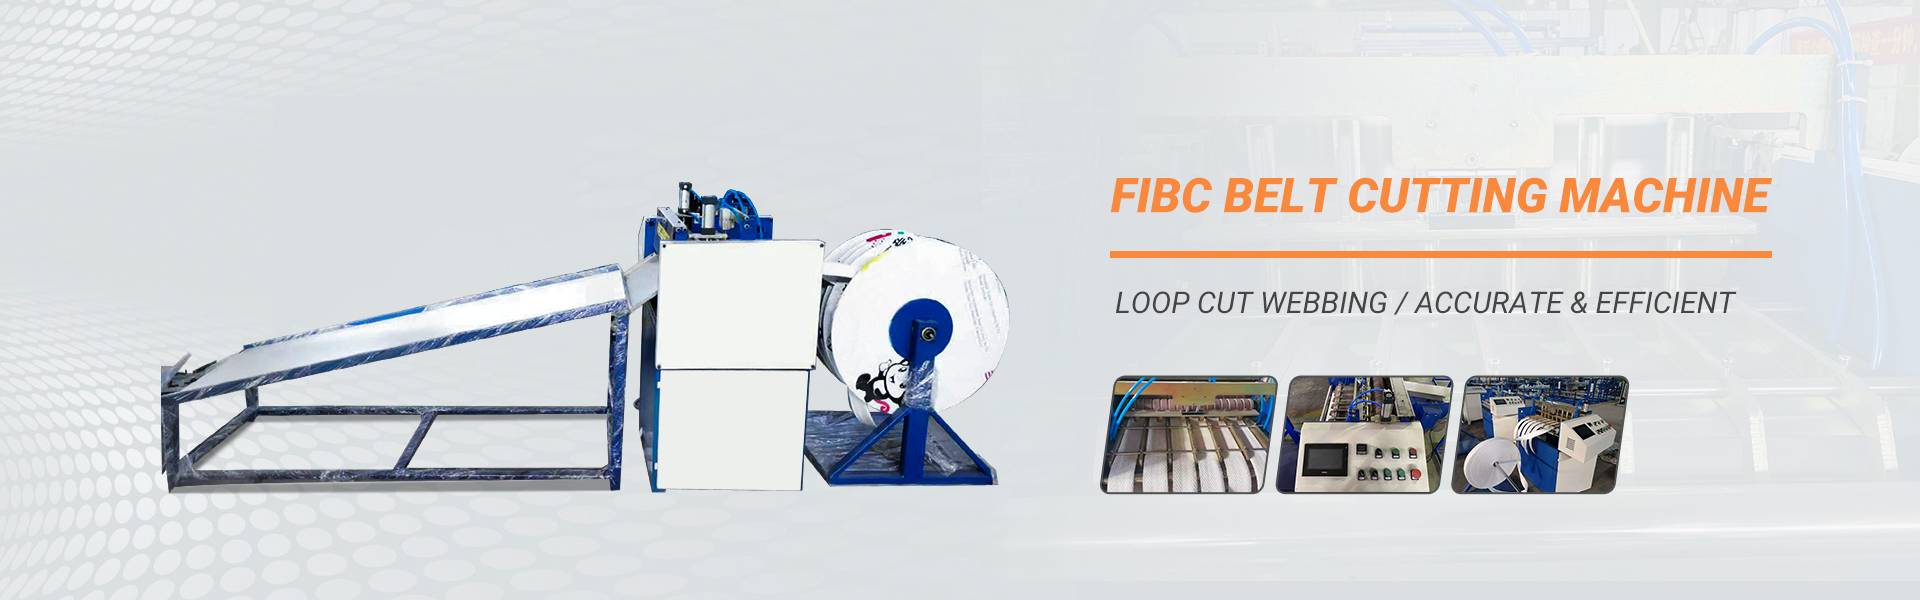 fibc belt cutting machine